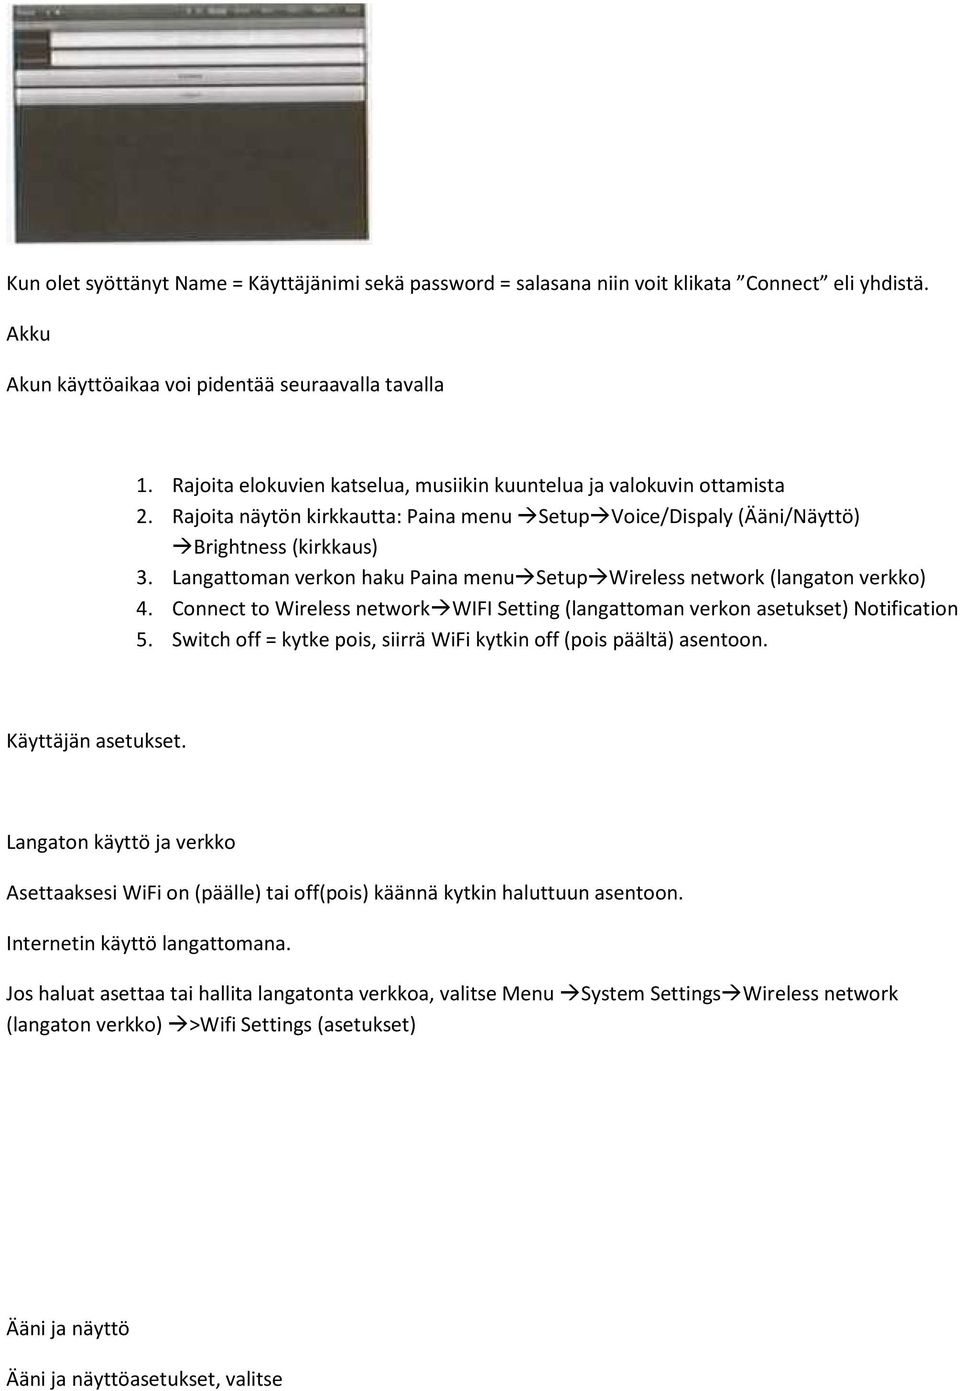 Langattoman verkon haku Paina menusetupwireless network (langaton verkko) 4. Connect to Wireless networkwifi Setting (langattoman verkon asetukset) Notification 5.